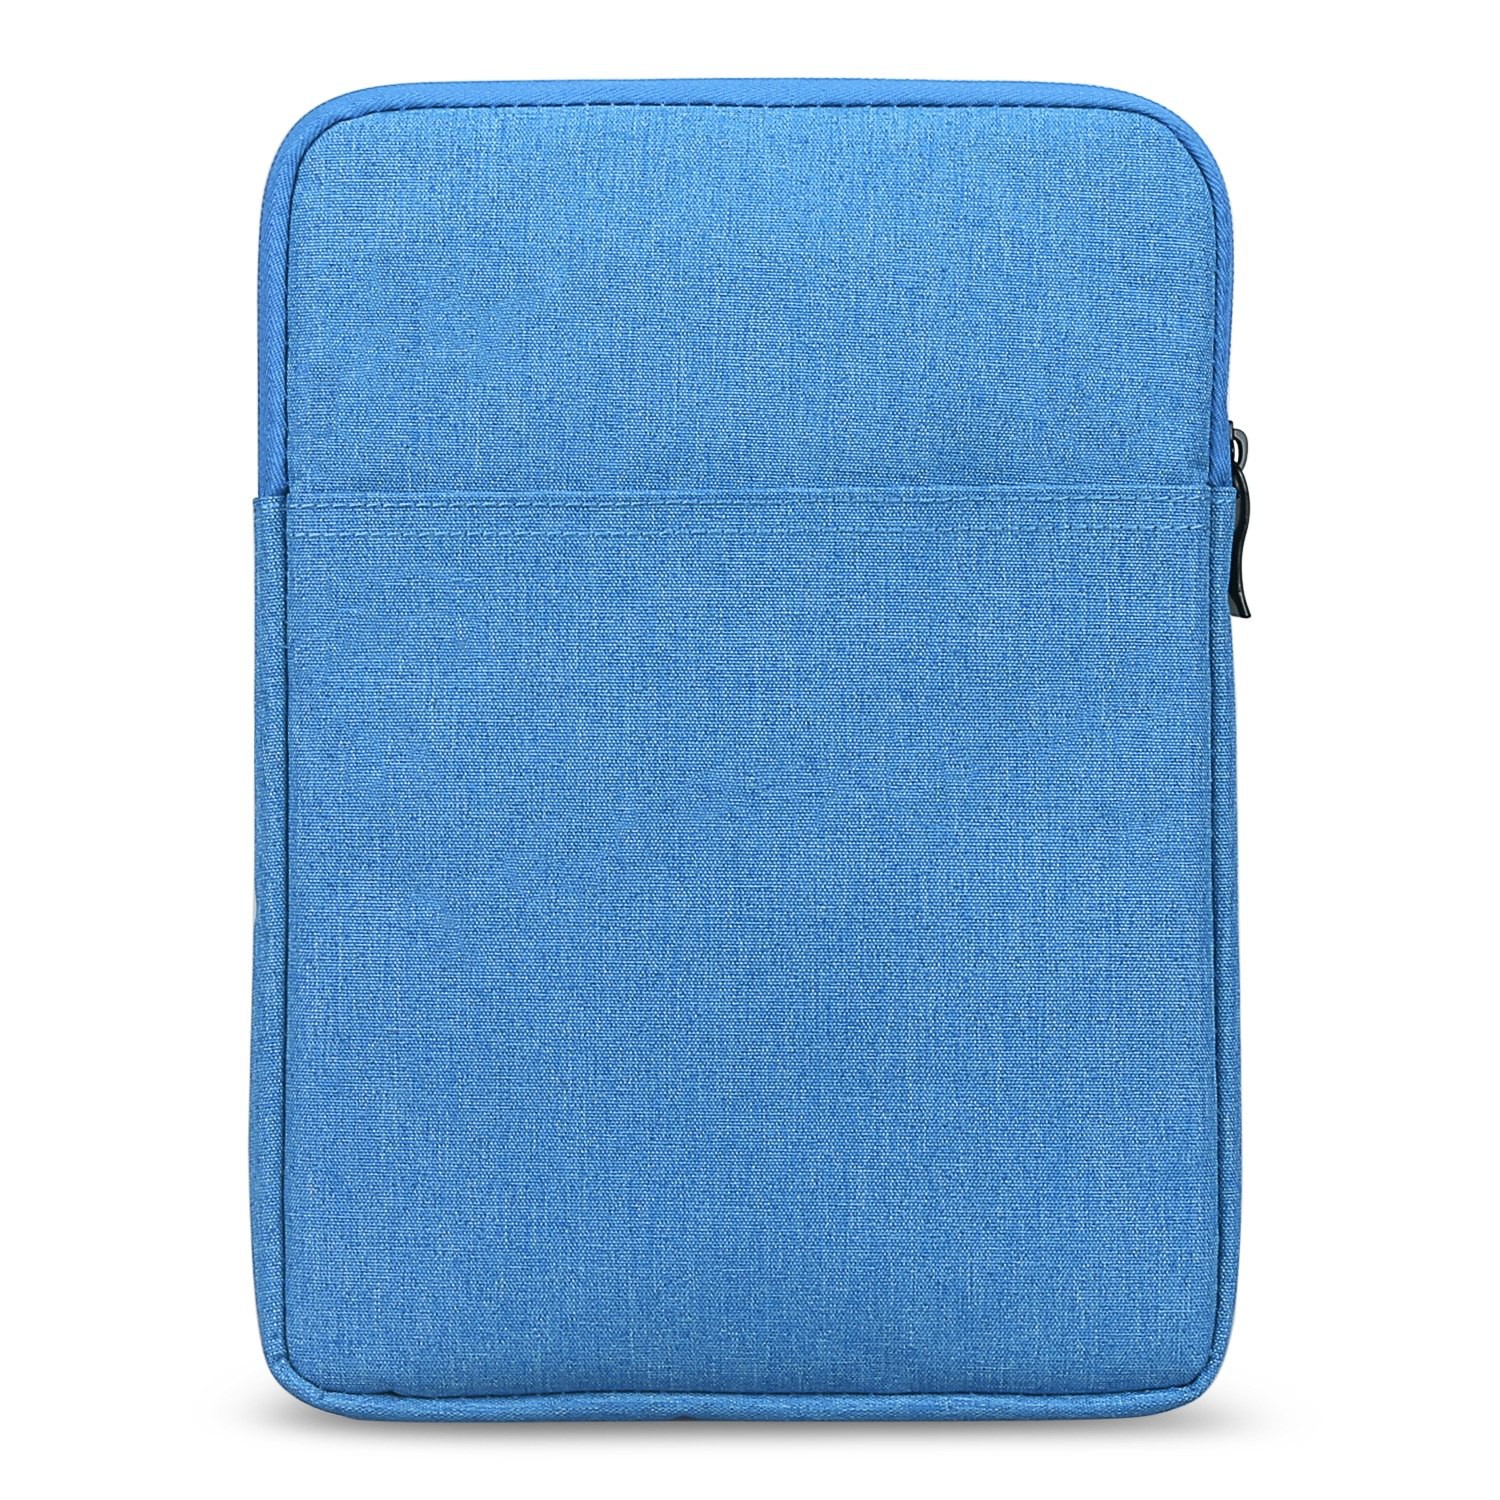 Vaak gesproken Verbetering rijk S02 DrPhone 7 inch E-Reader Soft Sleeve Beschermhoes - Pouchbag - Blauw